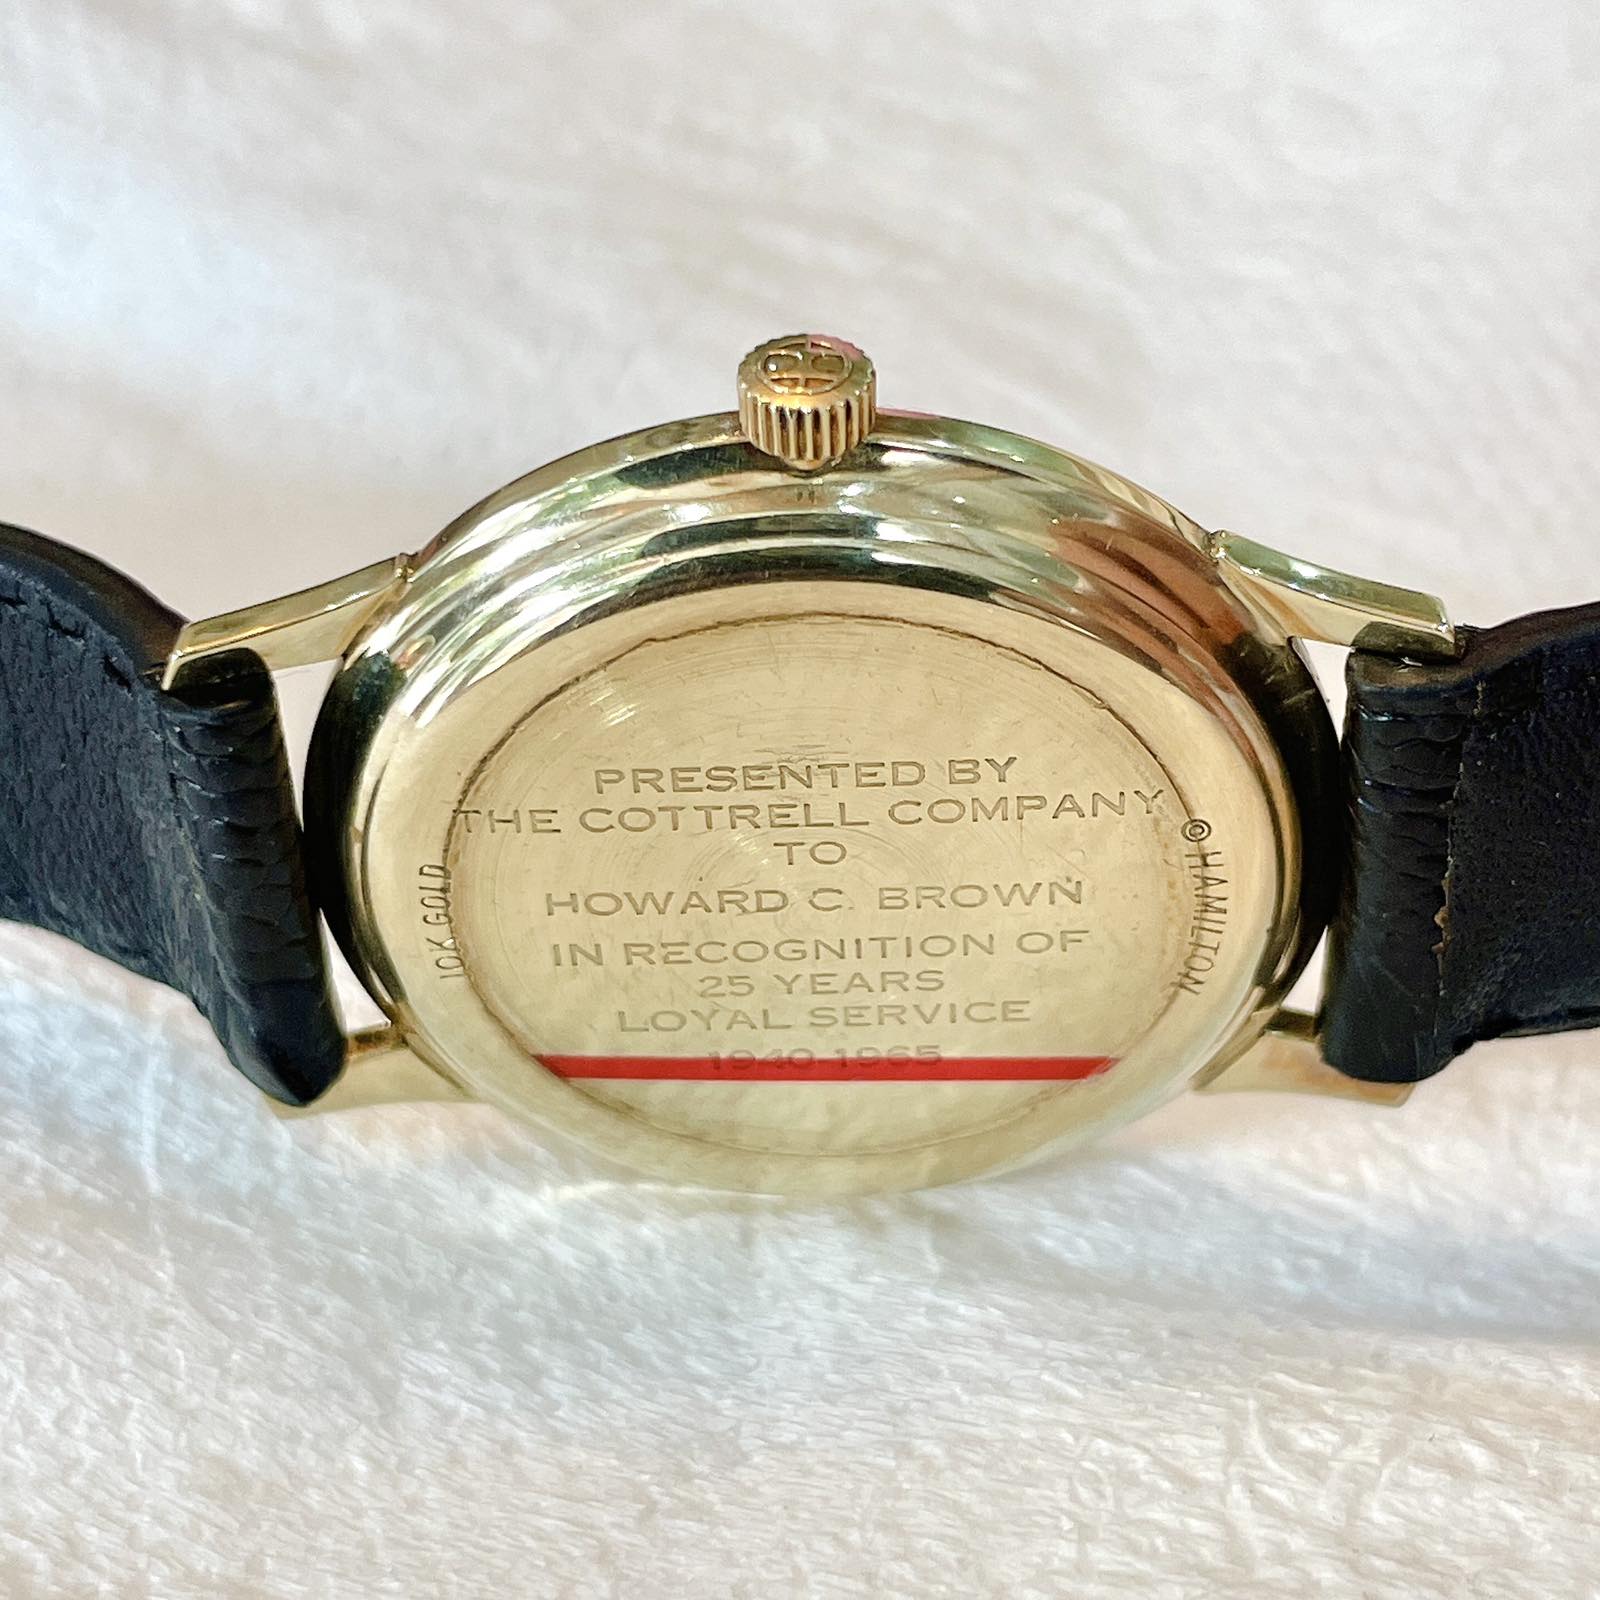 Đồng hồ cổ Hamilton Thin-0-matic vàng đúc 10k chính hãng thụy Sĩ